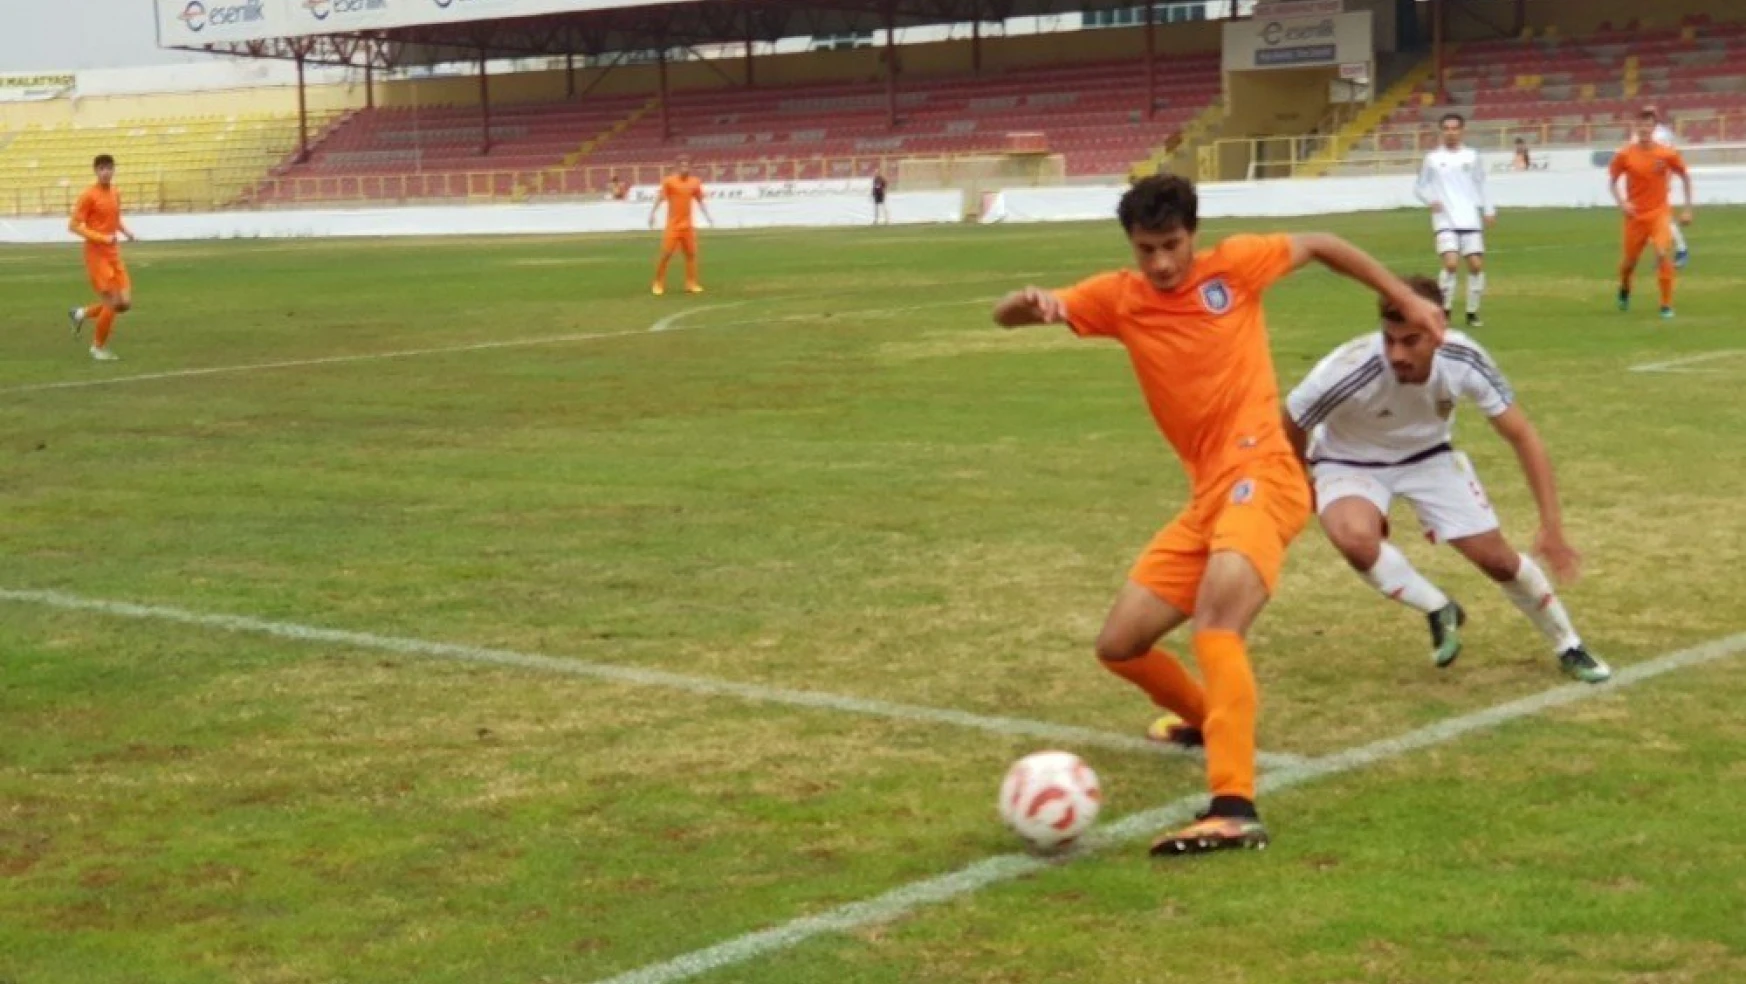 U21 Ligi'nde Evkur Yeni Malatyaspor, Medipol Başakşehir'e 2-1 mağlup oldu
